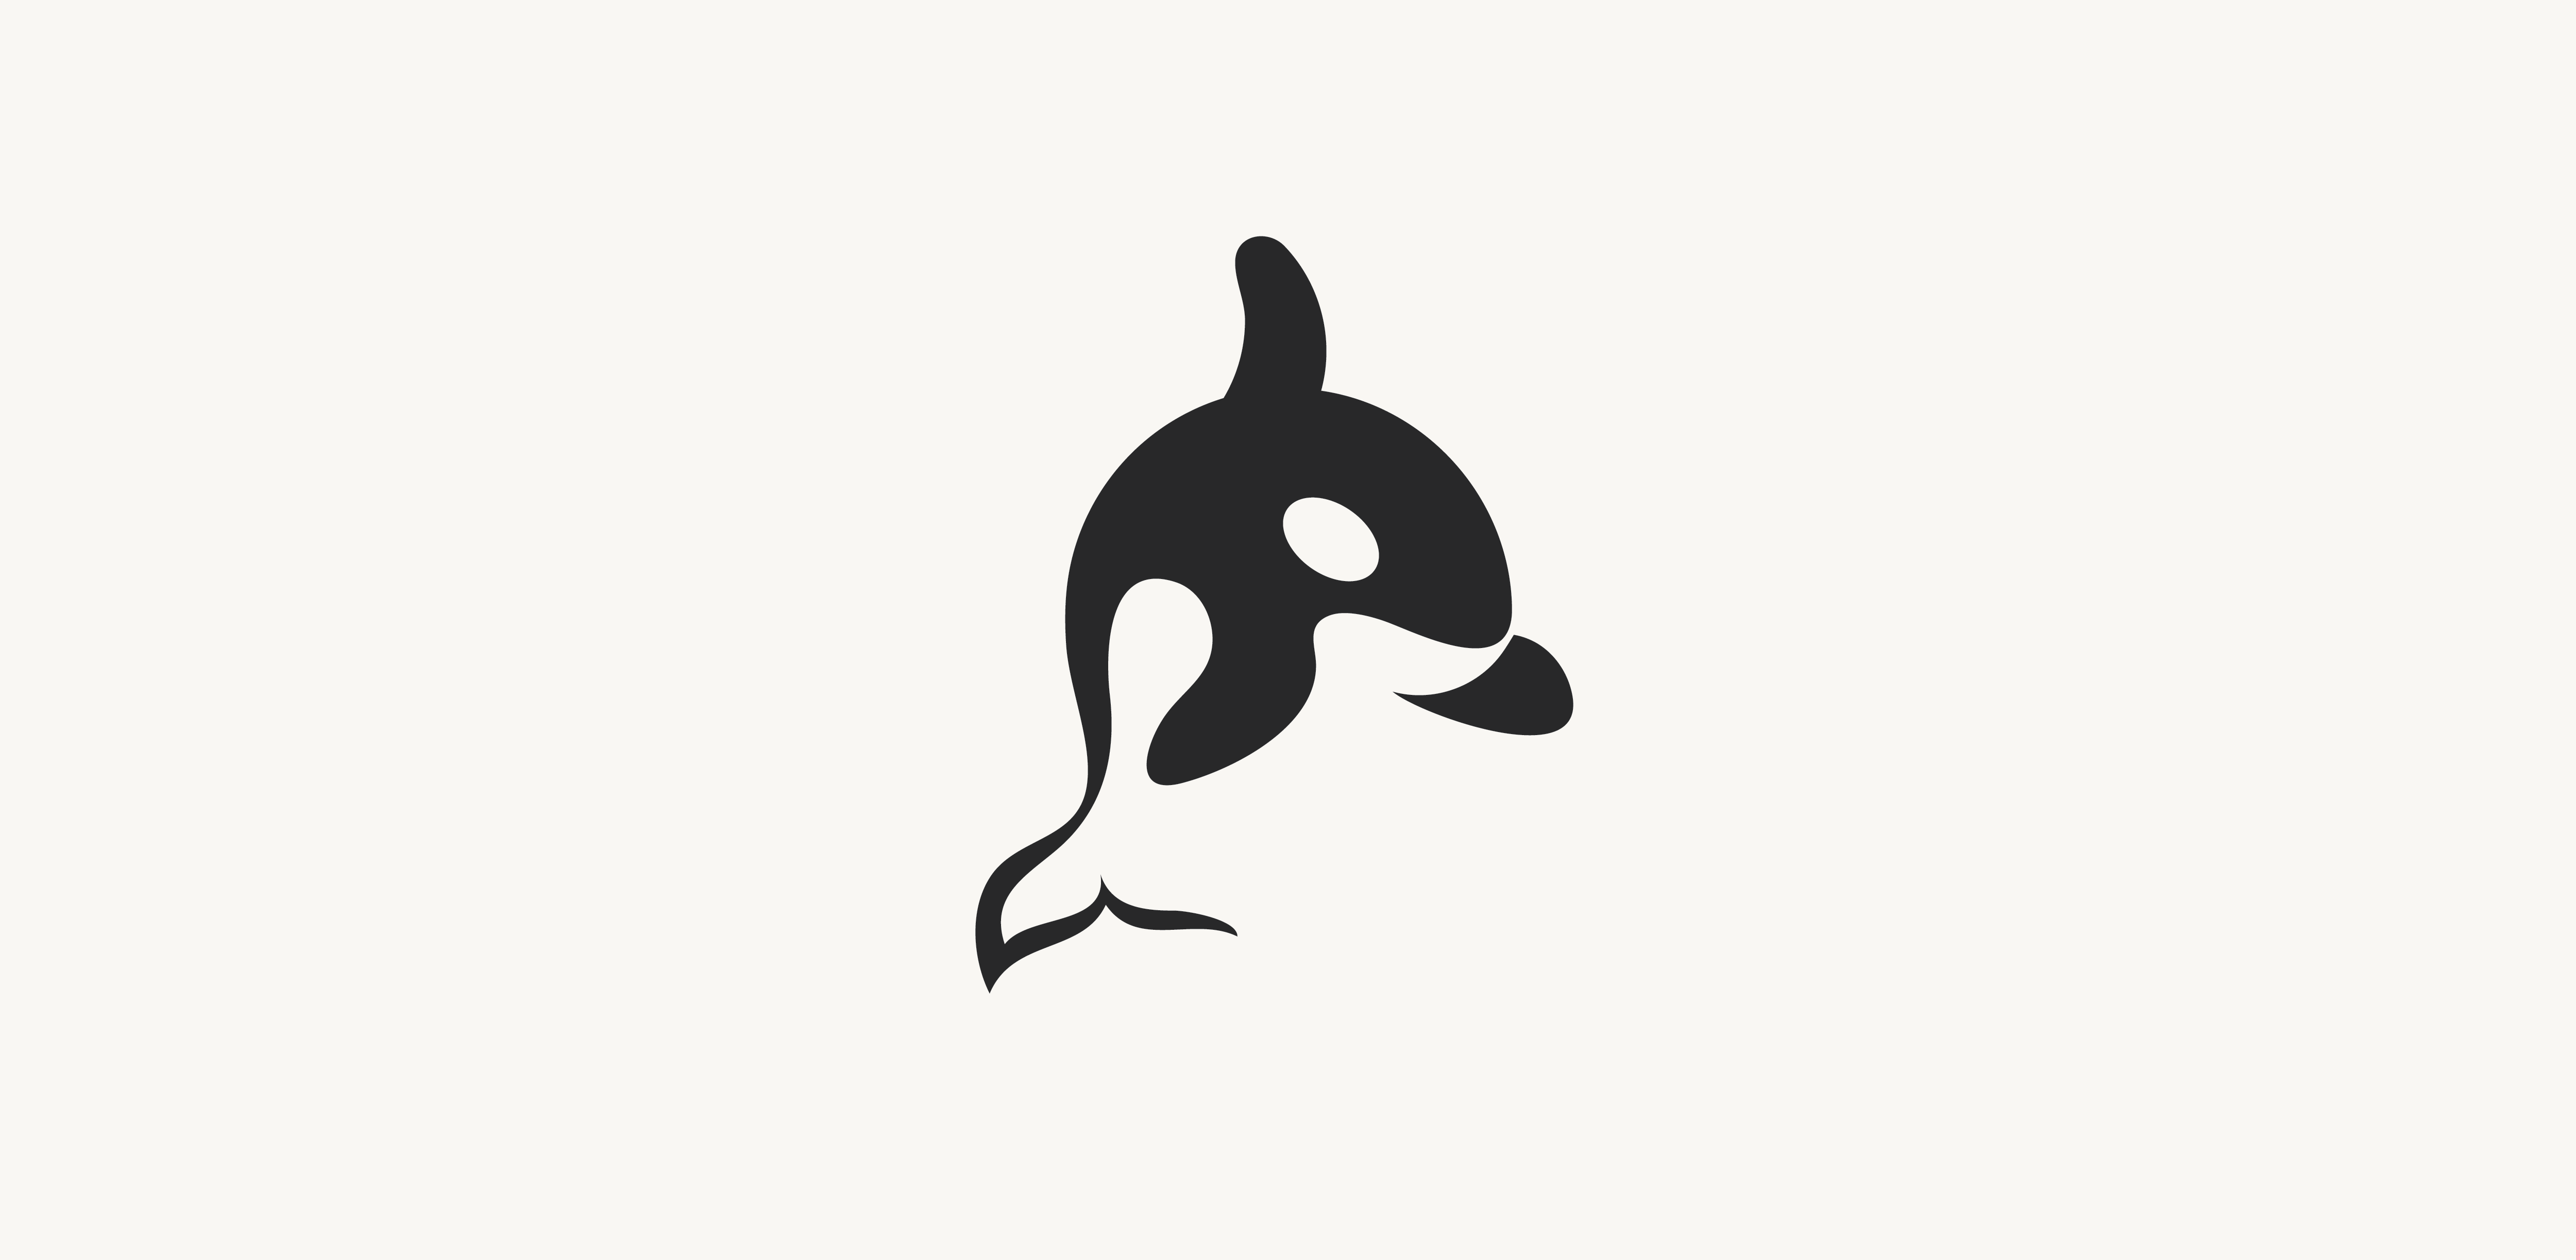 Orca Logo - ORCA | Skillshare Projects